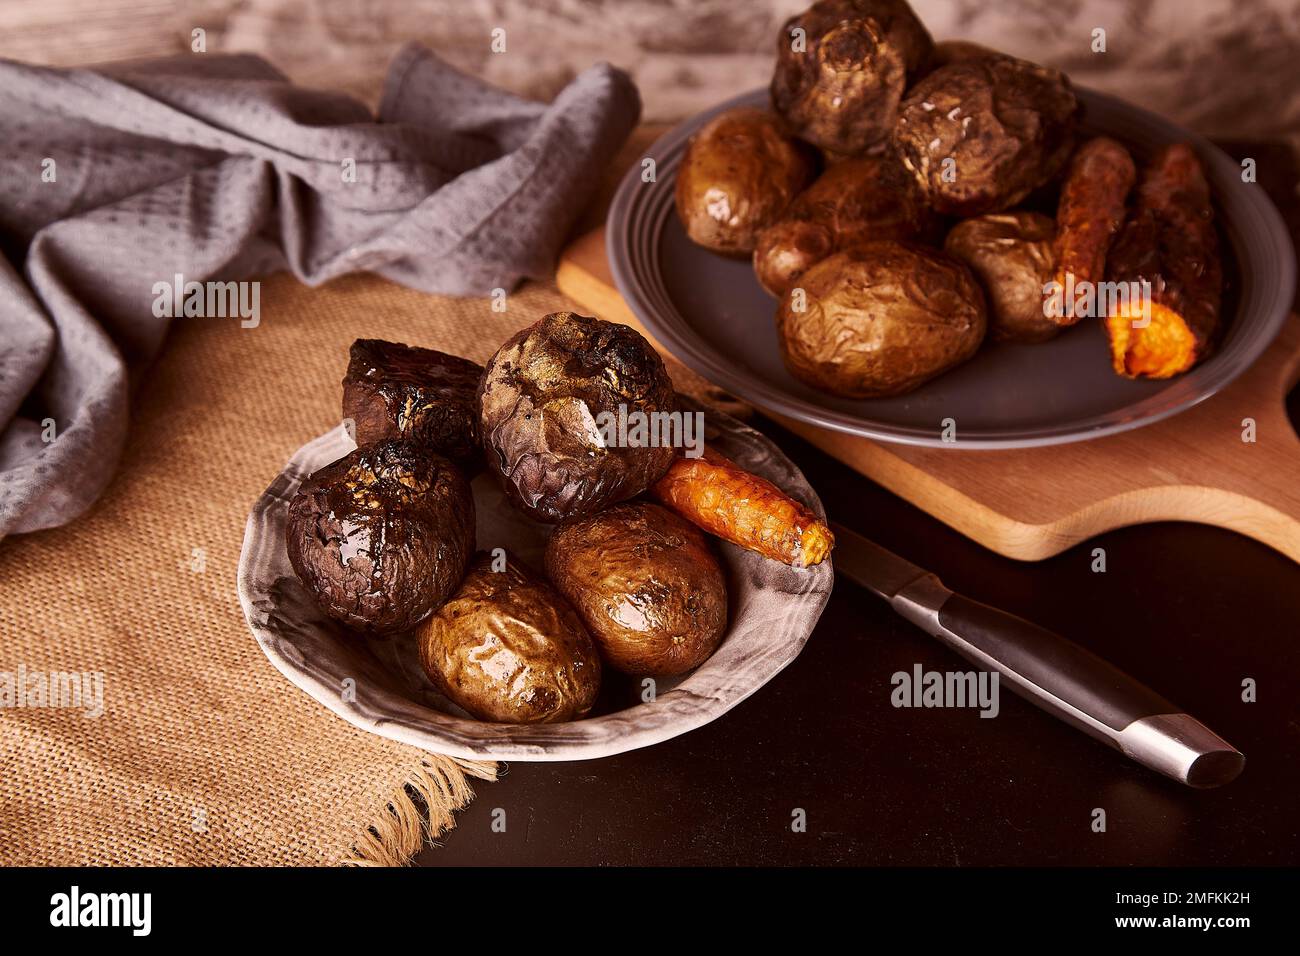 Gebackenes gesundes Gemüse auf rustikalem Hintergrund - Karotten, Kartoffeln, rote Beete. Vollnahrung, mediterrane Ernährung Stockfoto